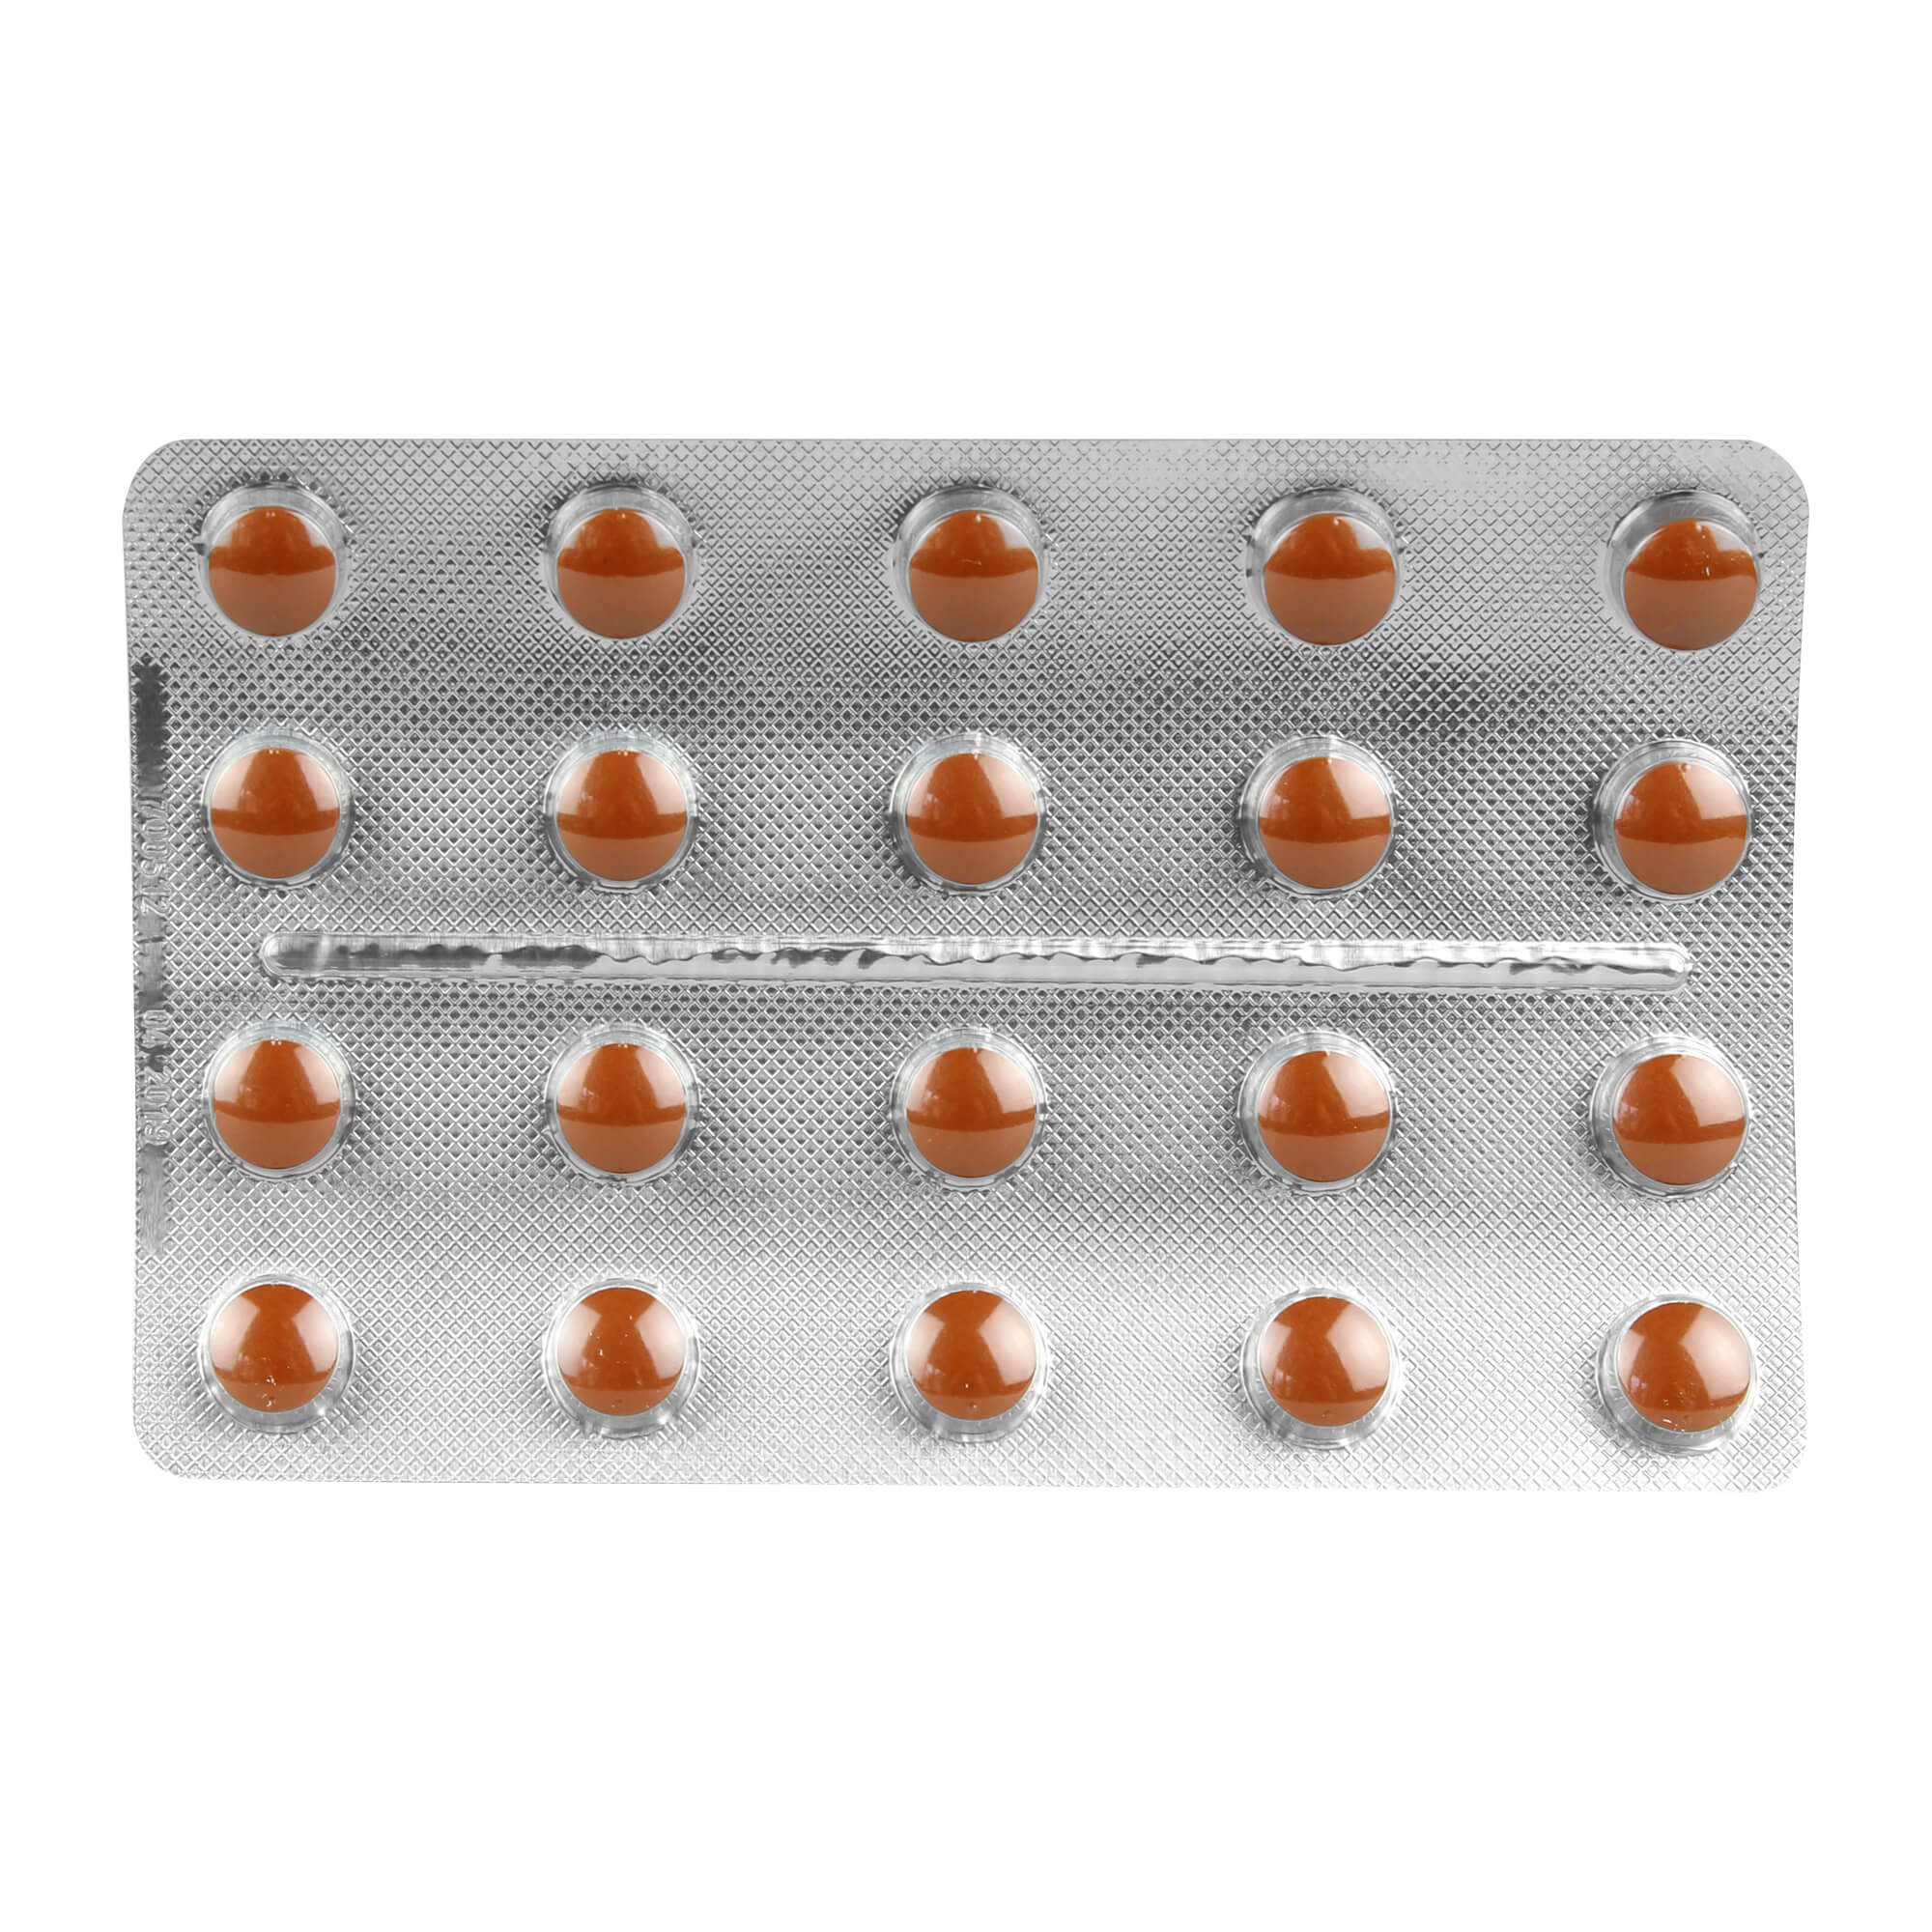 RhodioLoges 200 mg Filmtabletten